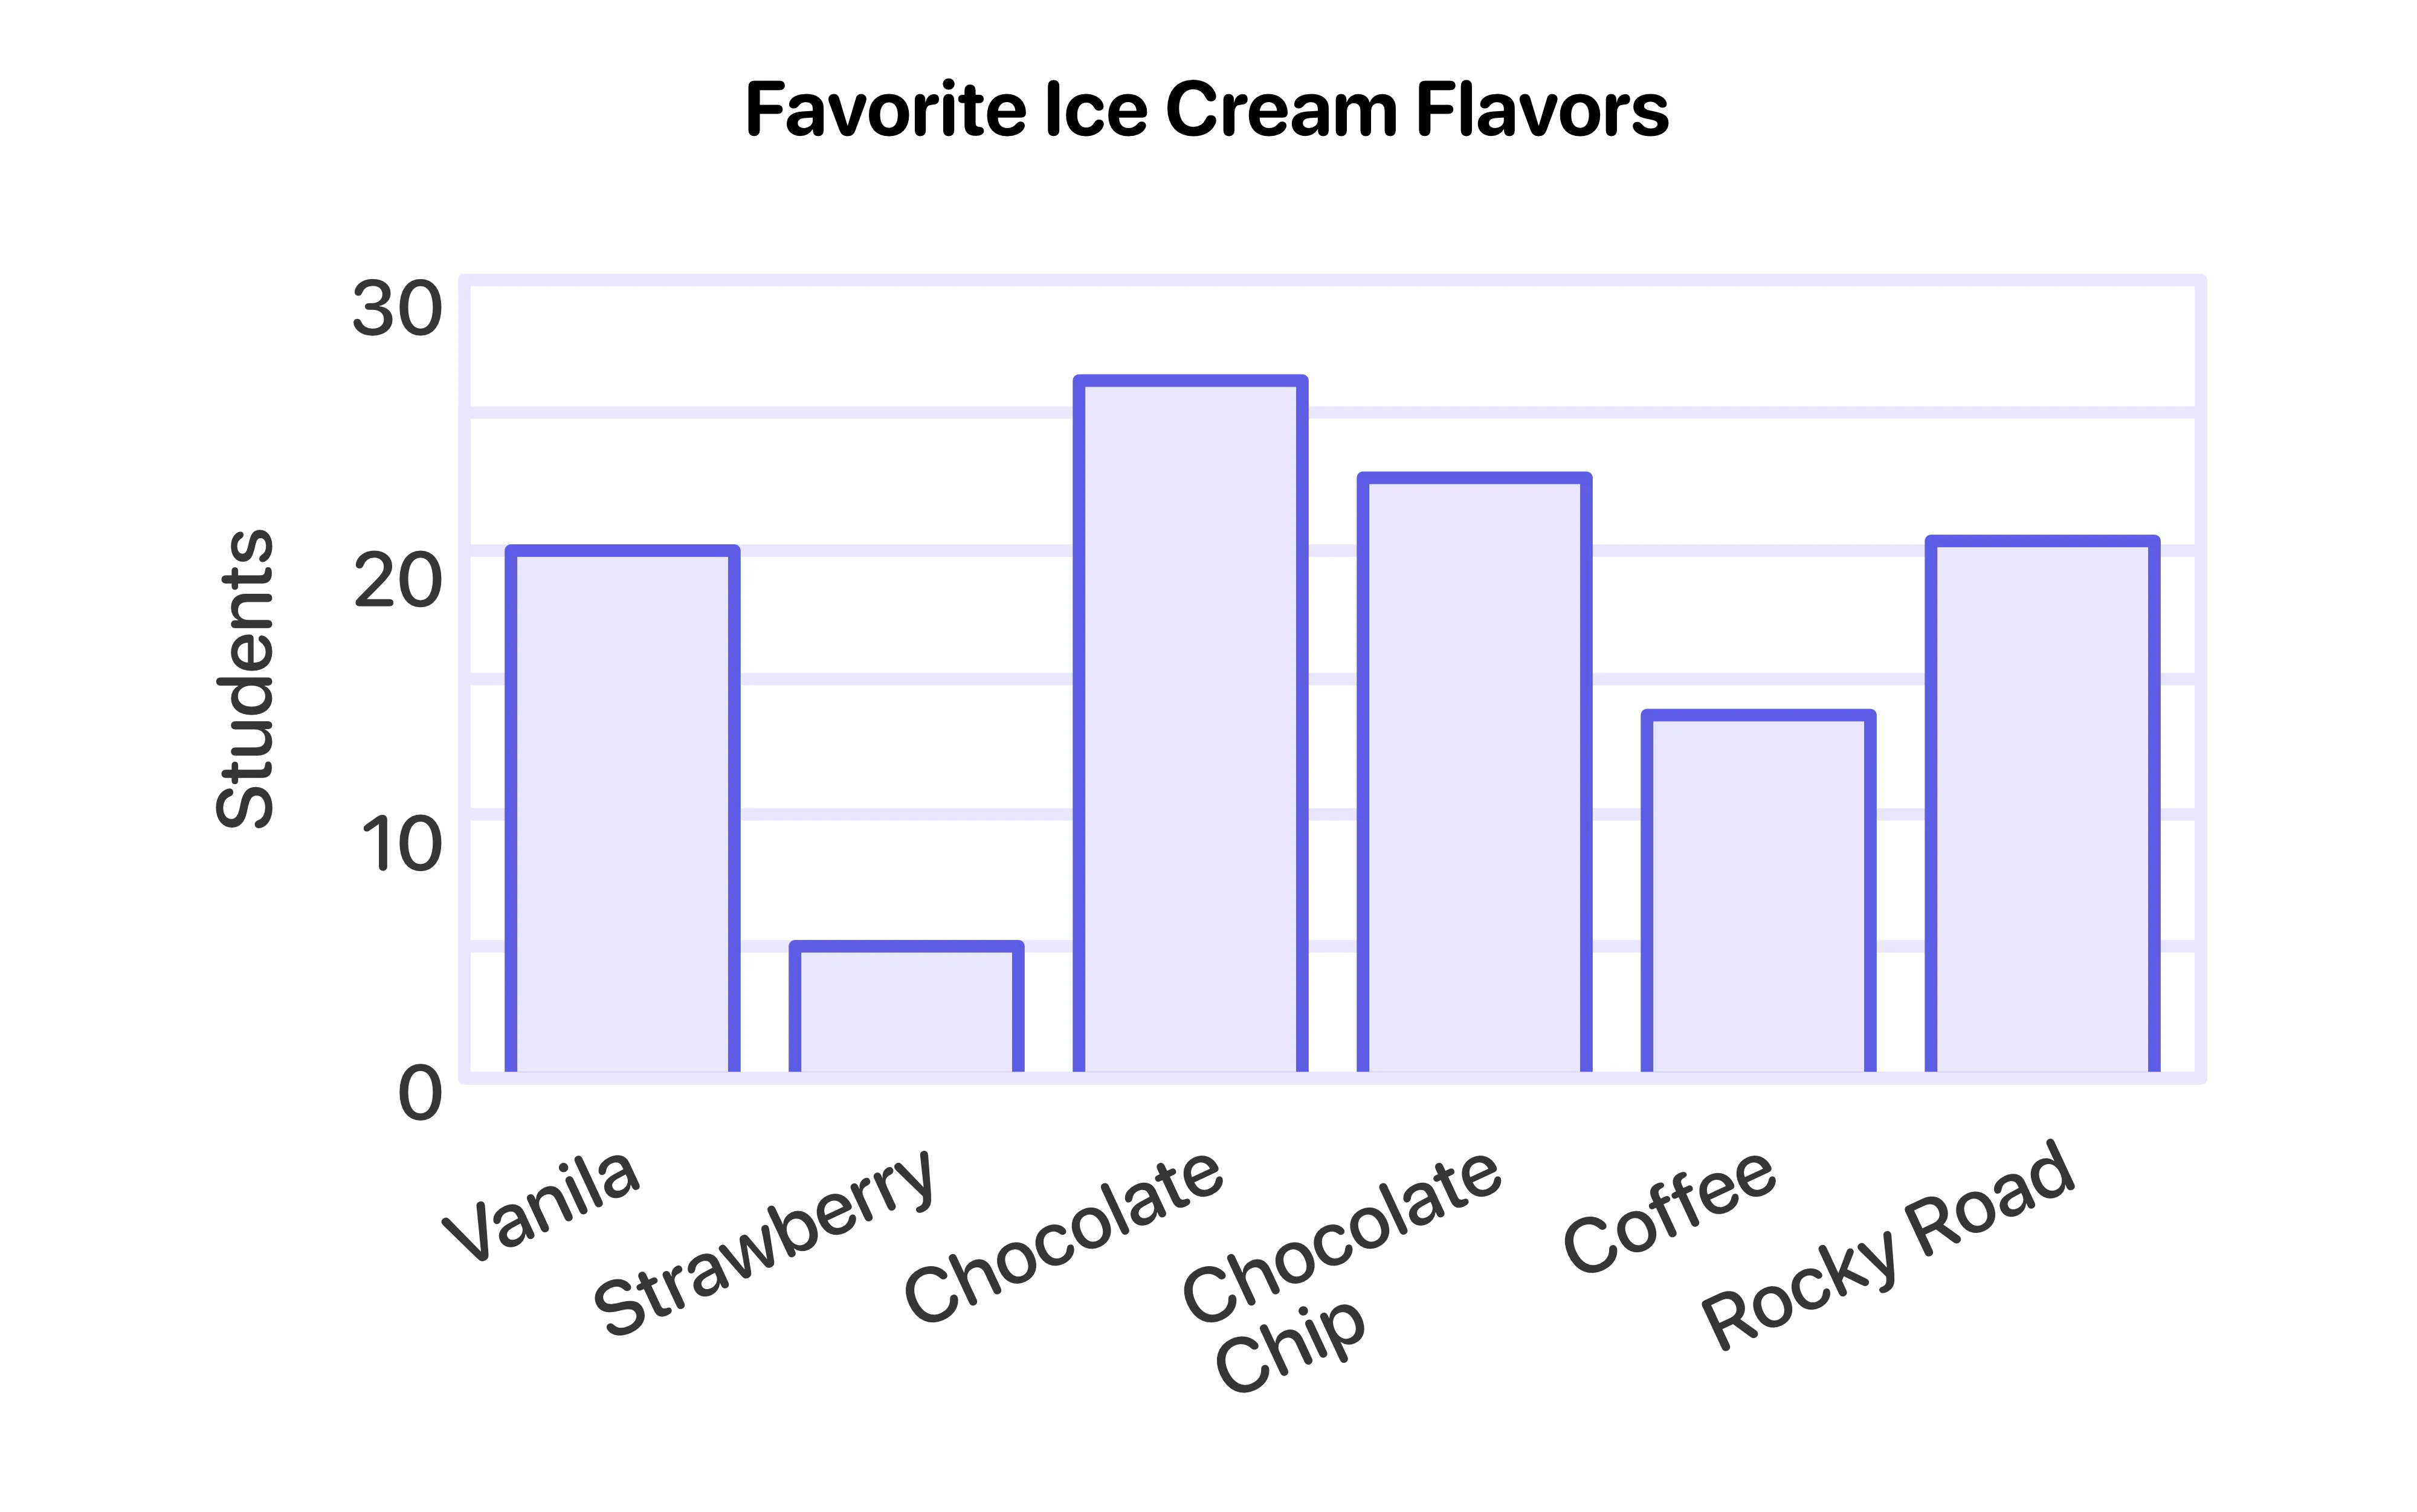 Favorite Ice cream flavors